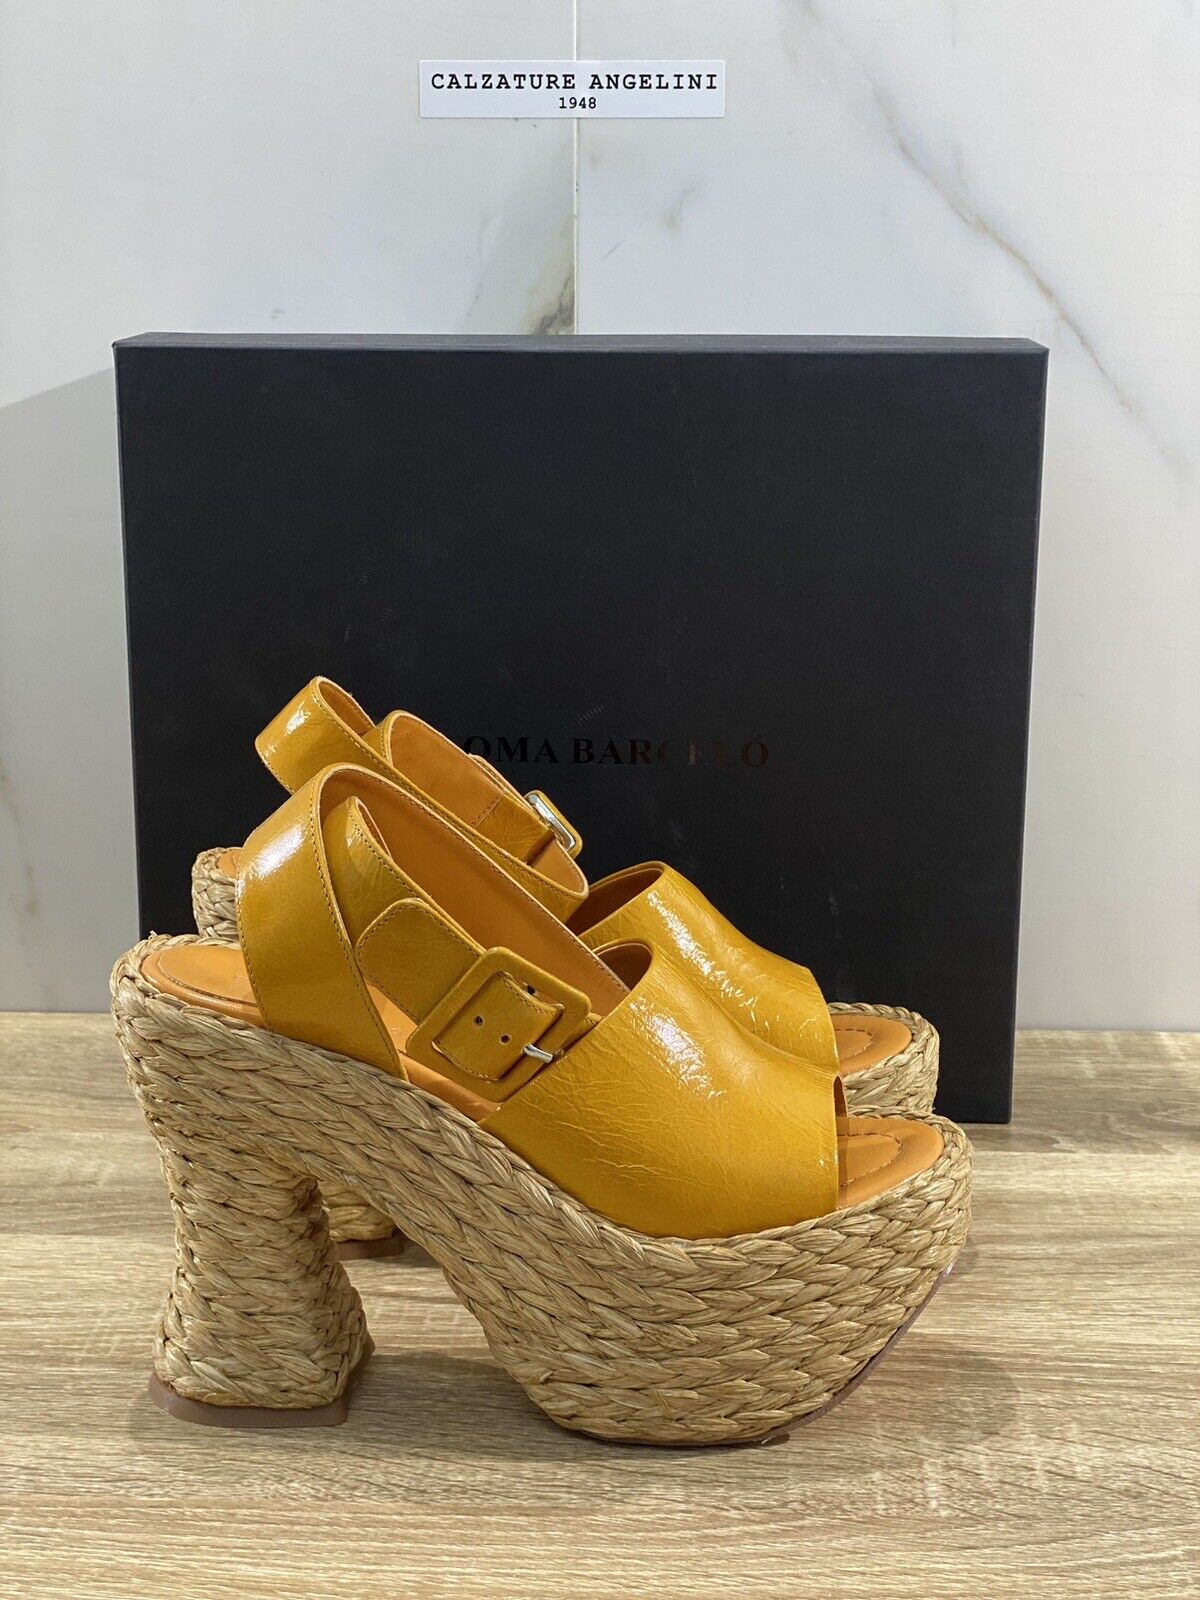 Paloma BARCELO’ Sandalo Donna Leuca Pelle Ocra Luxury Shoes 38